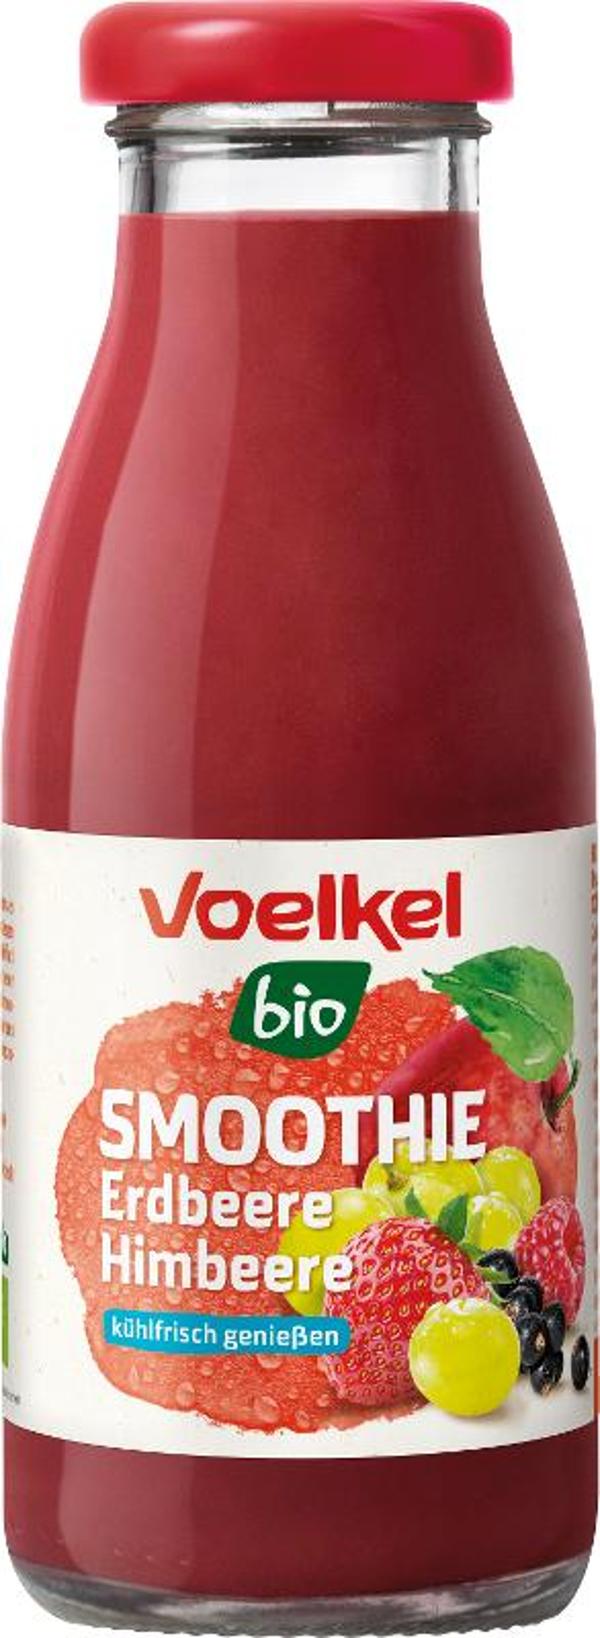 Produktfoto zu Smoothie mit Erdbeere, Himbeere und scharzer Johannisbeere 0,28l Voelkel